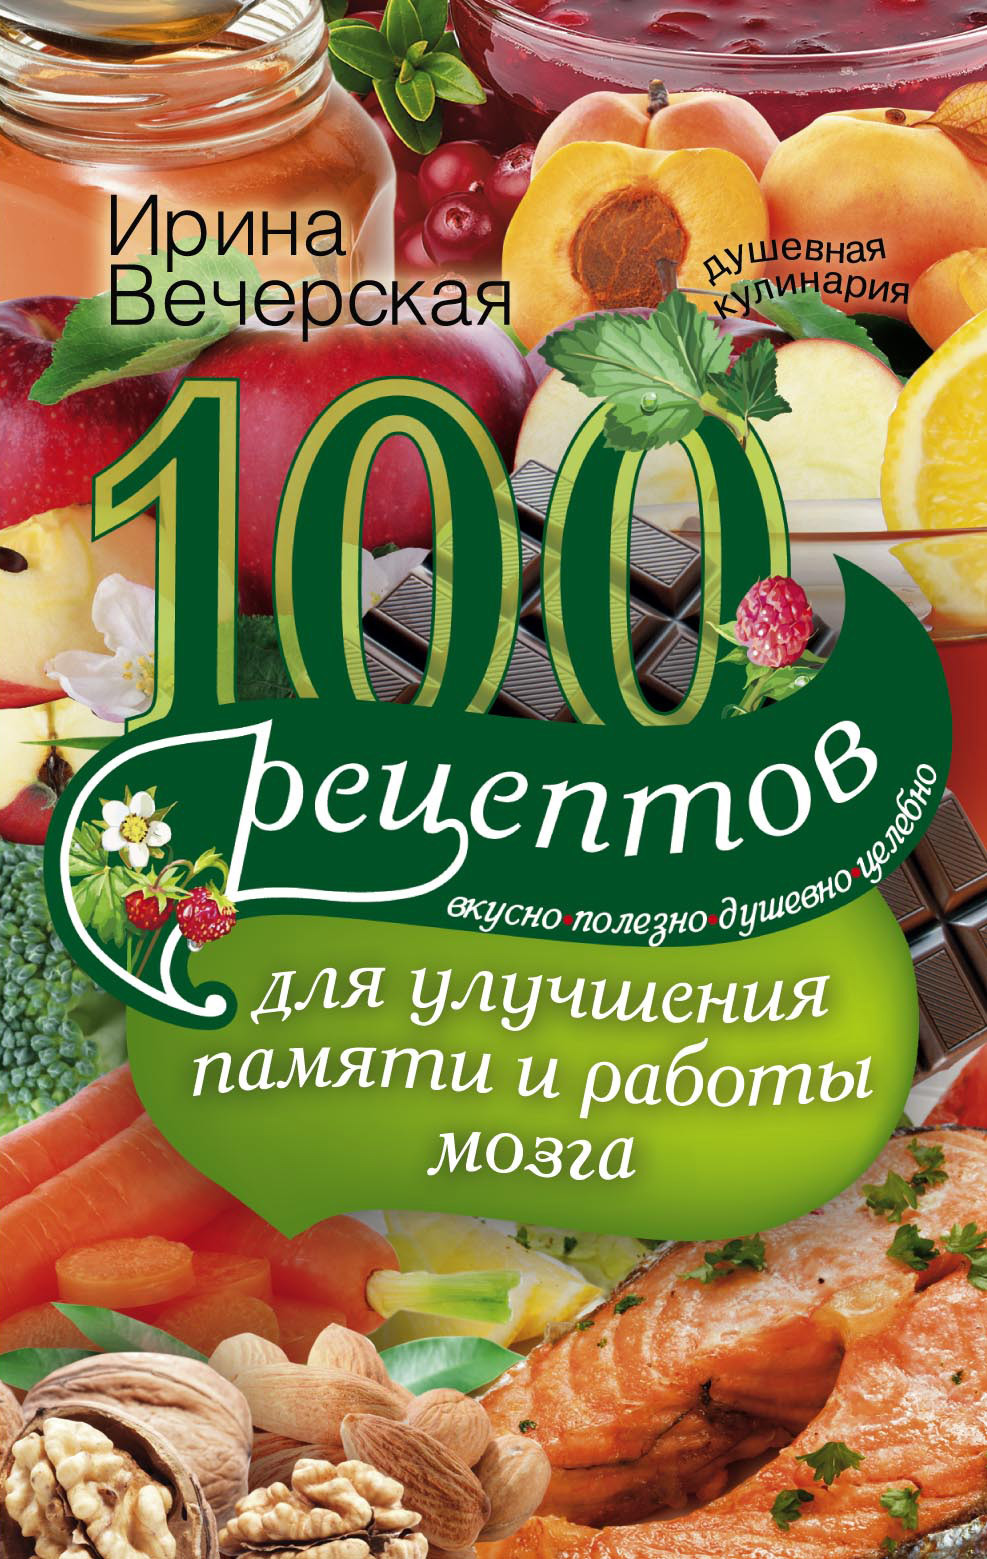 Вечерская Ирина - 100 рецептов для улучшения памяти и работы мозга. Вкусно, полезно, душевно, целебно скачать бесплатно